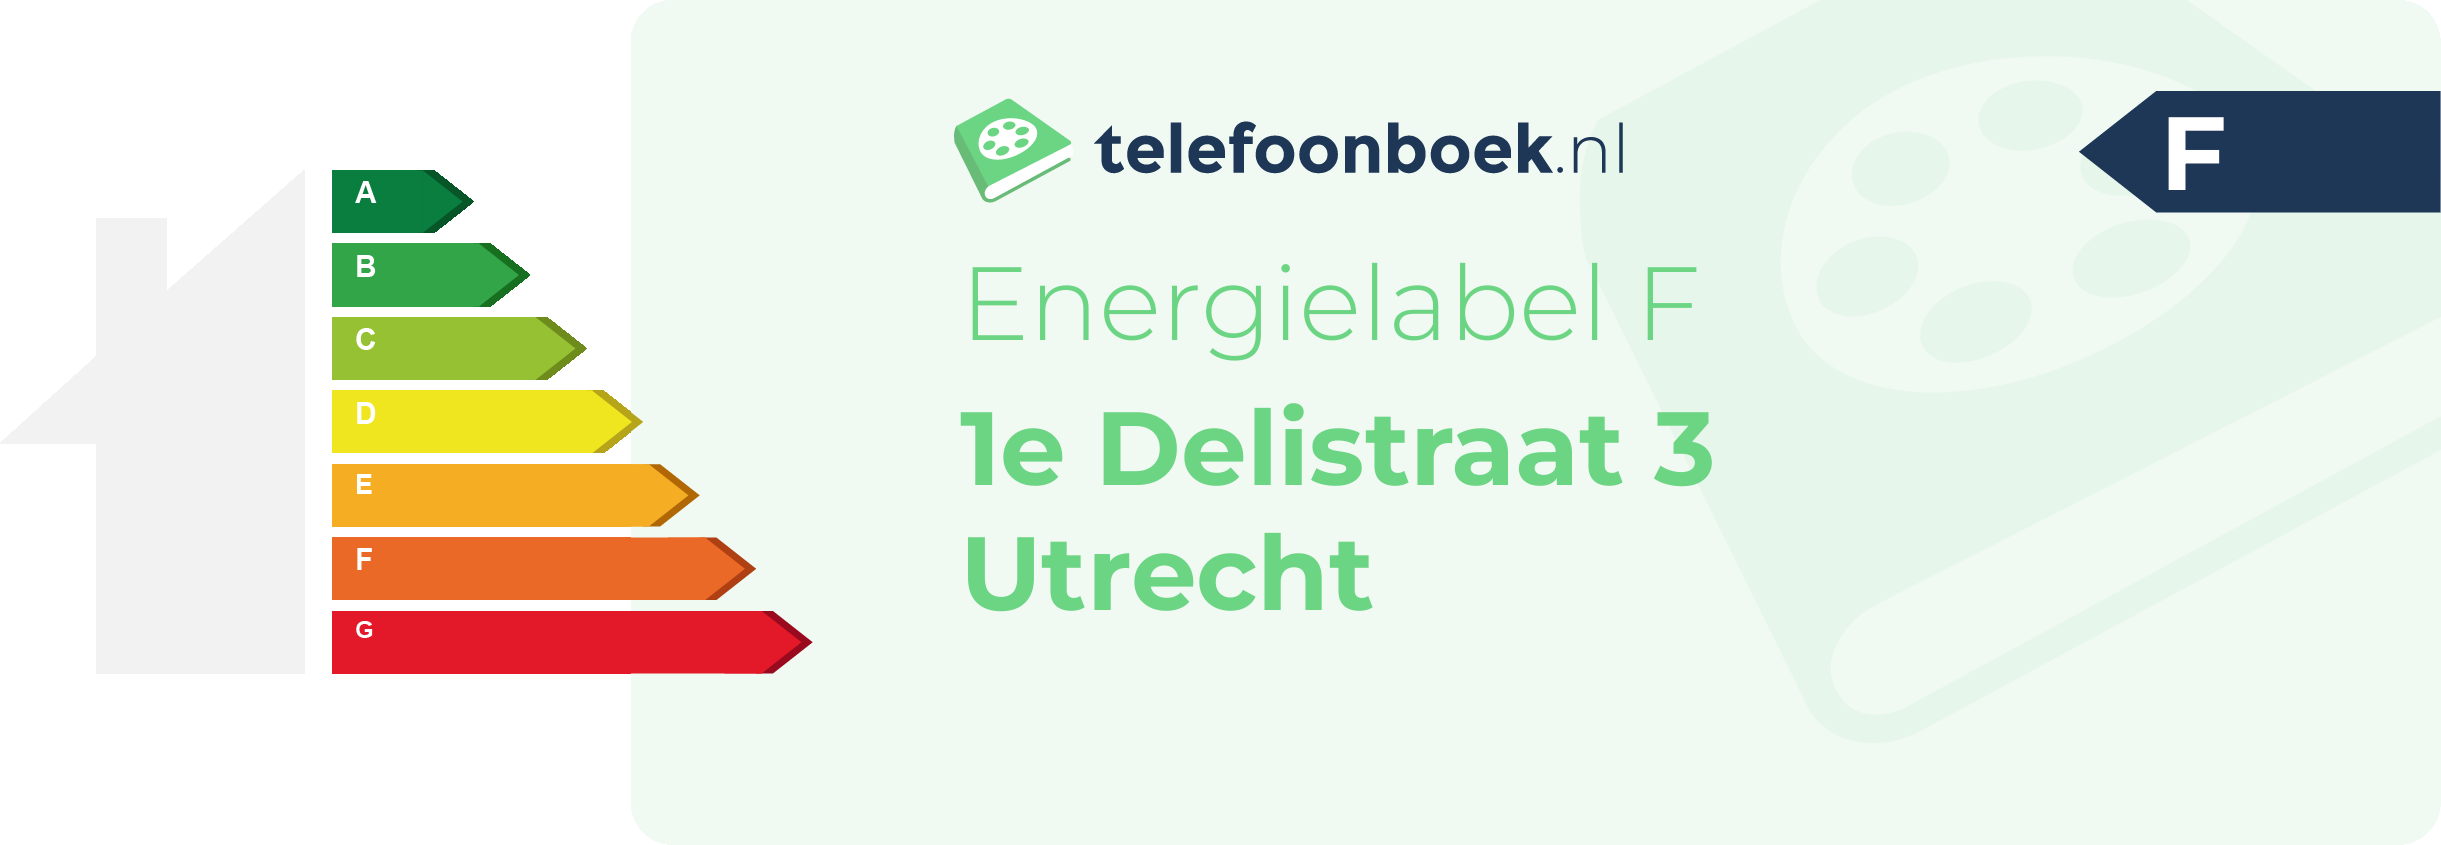 Energielabel 1e Delistraat 3 Utrecht